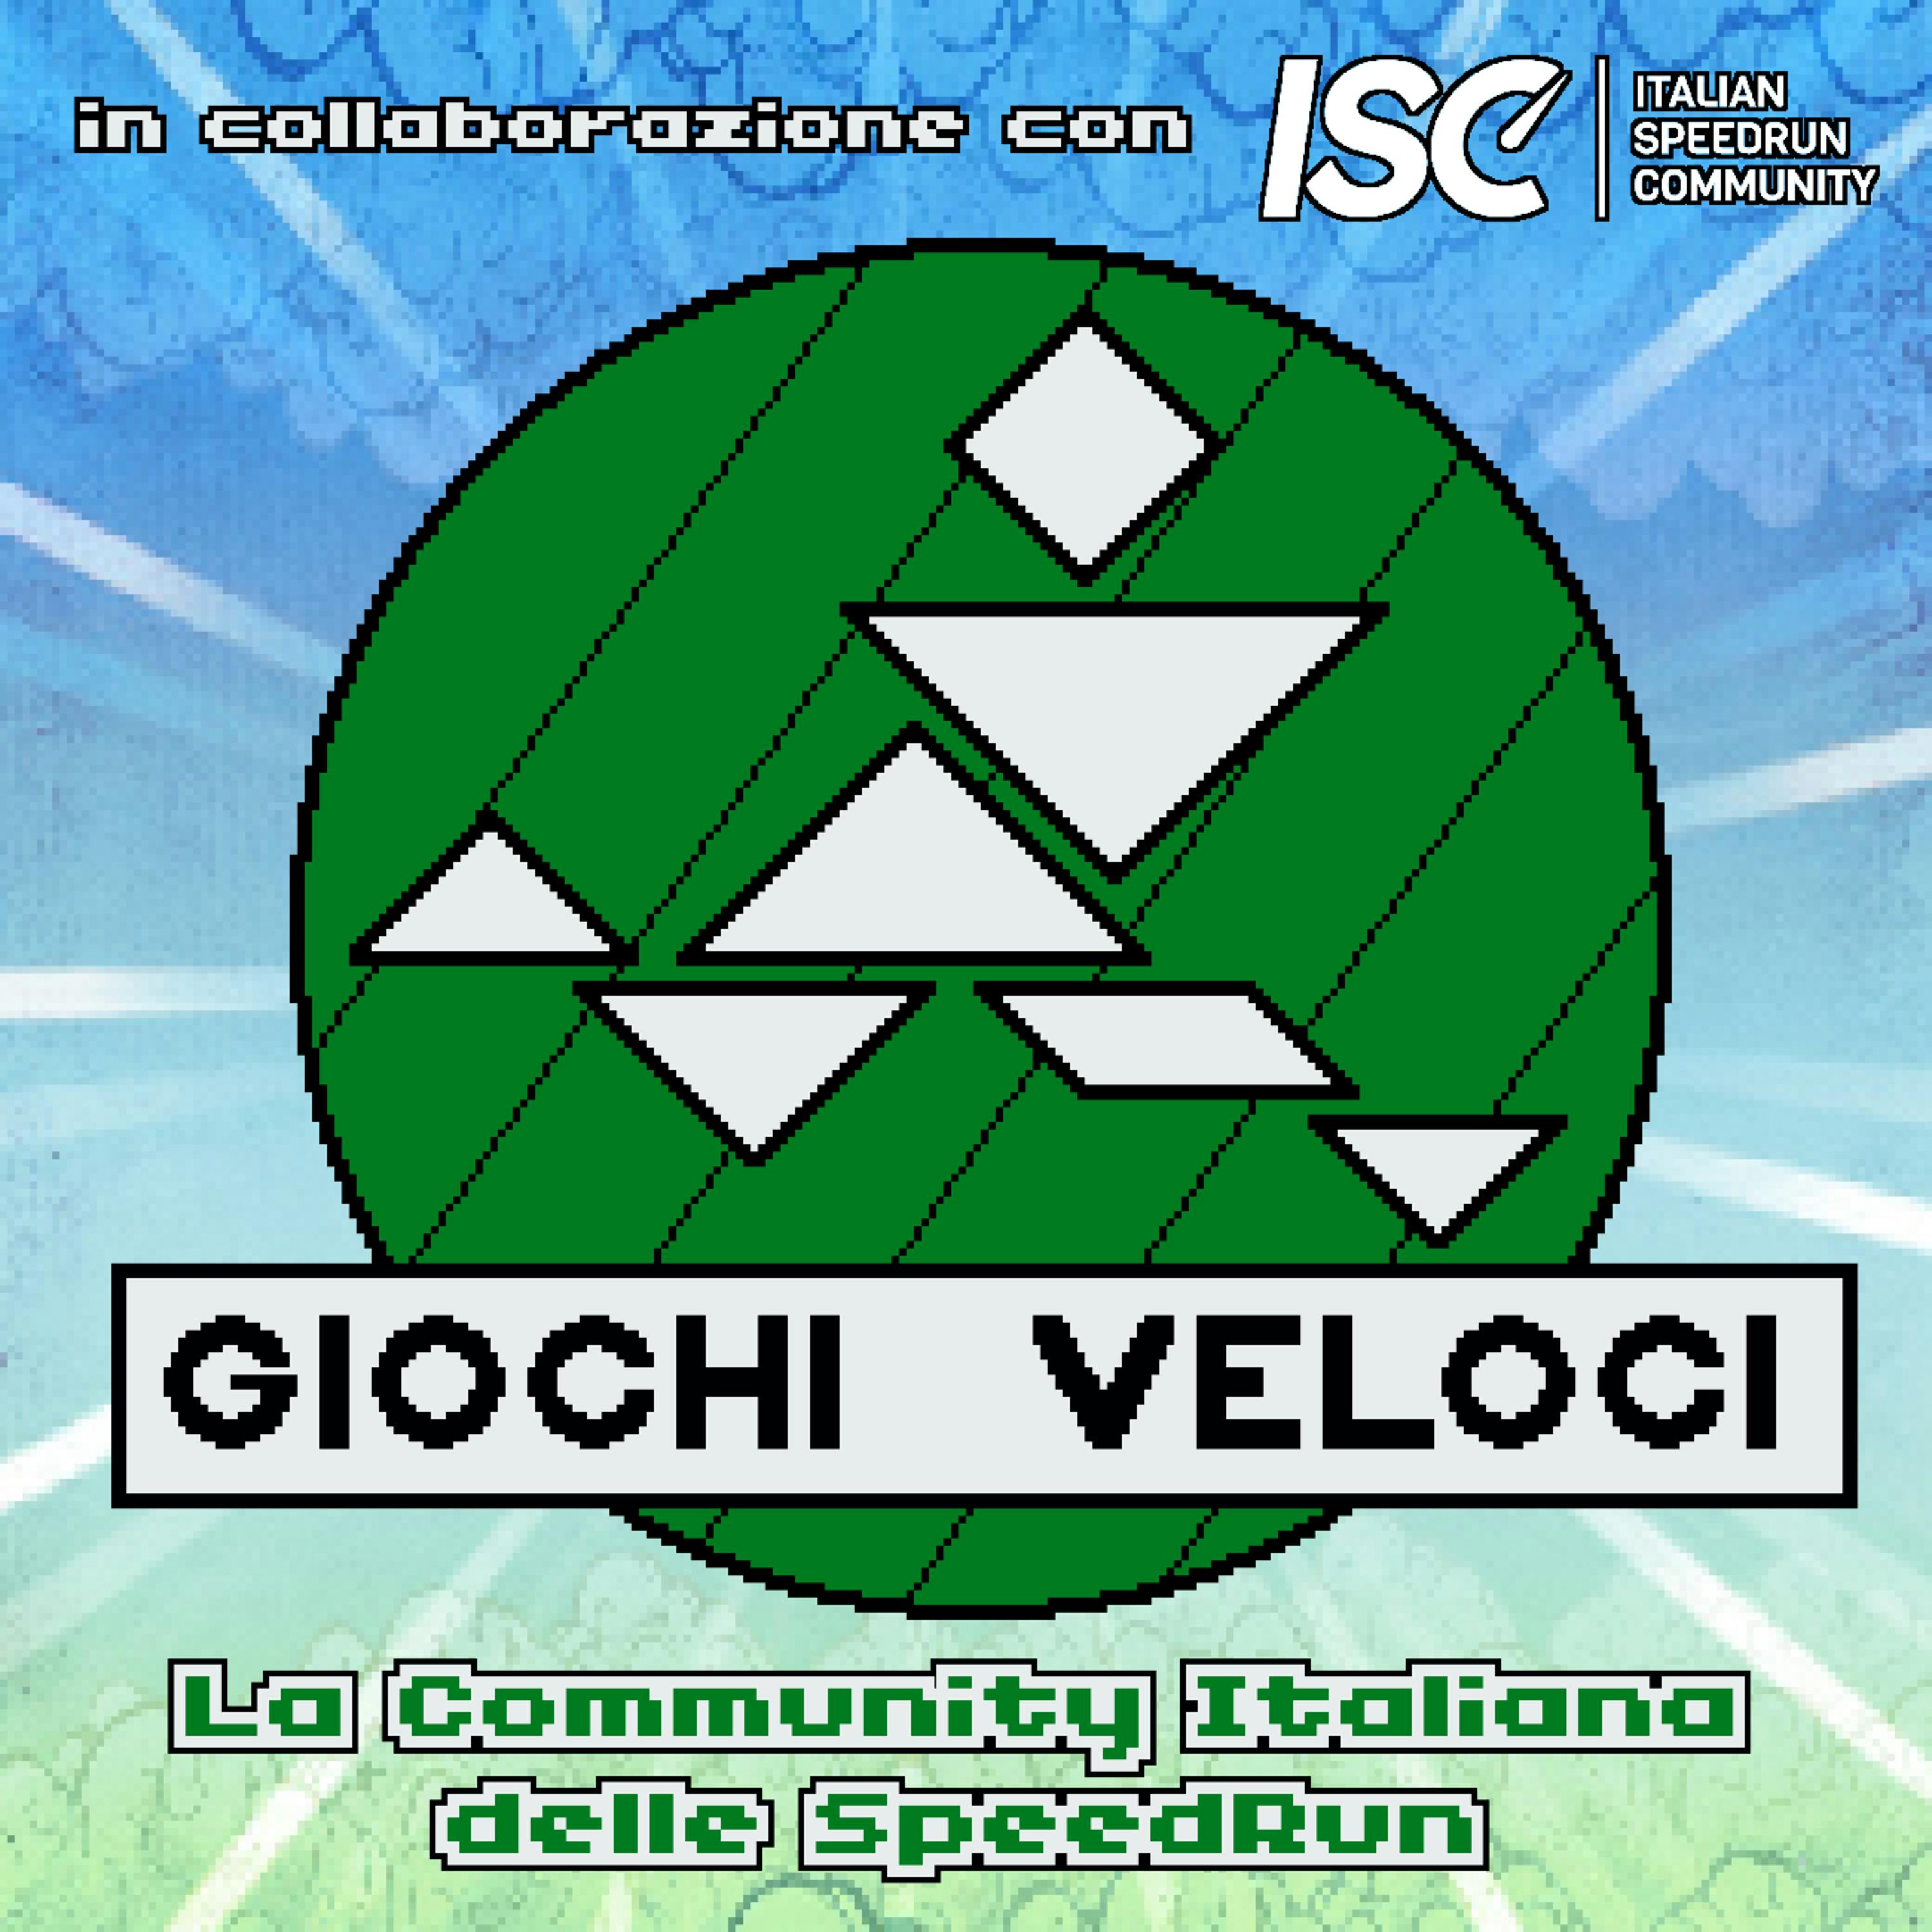 Giochi Veloci - La Community Italiana delle Speedrun